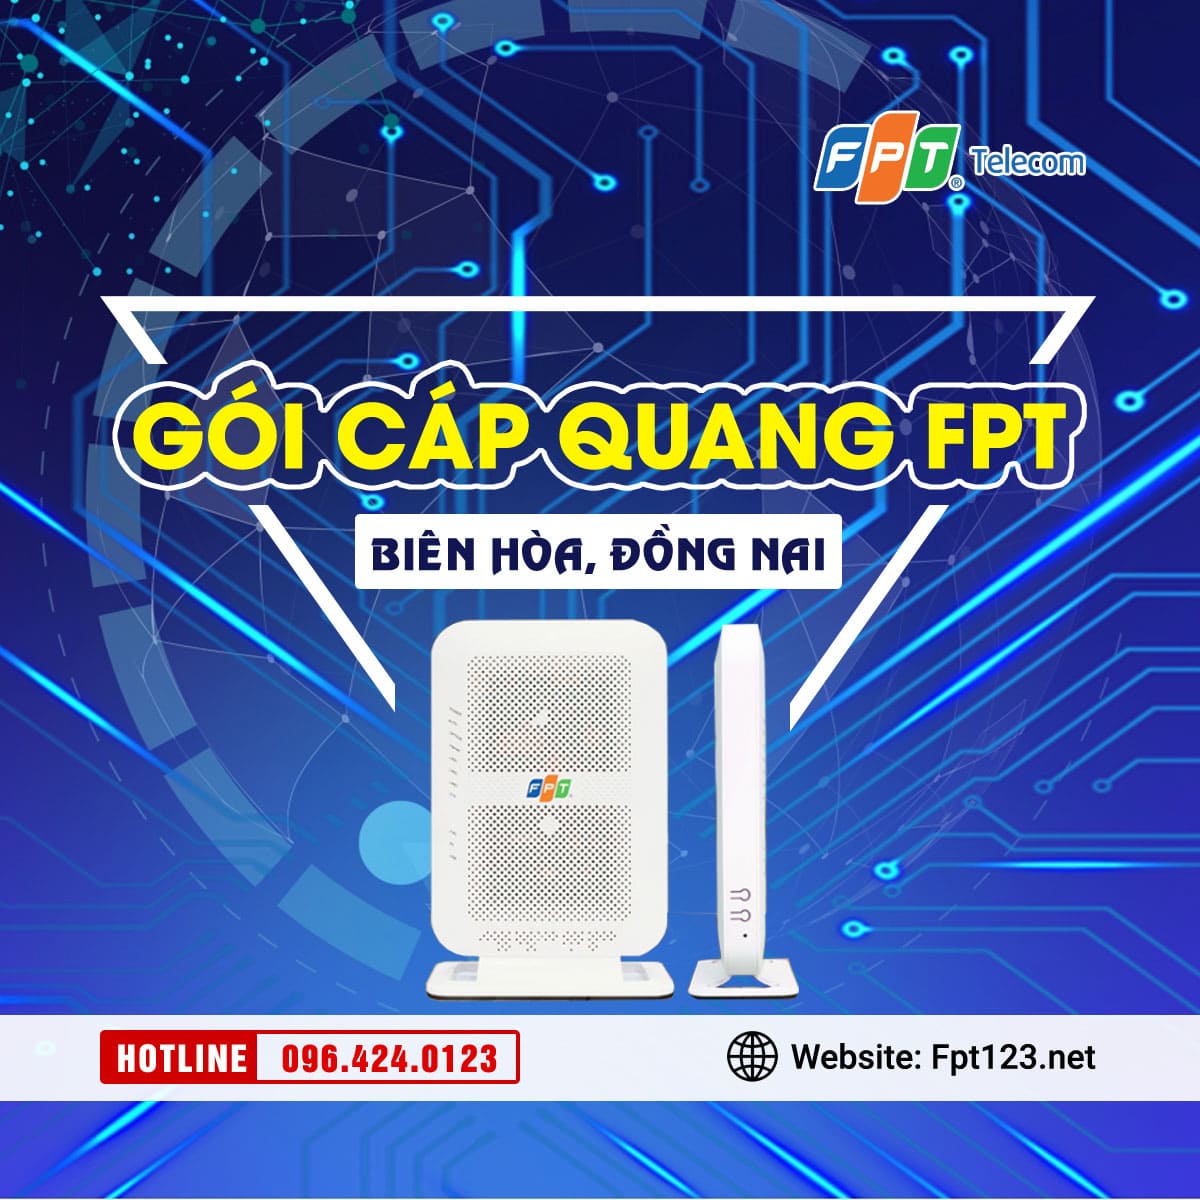 Lắp mạng cáp quang FPT ở phường Hố Nai, Biên Hòa, Đồng Nai